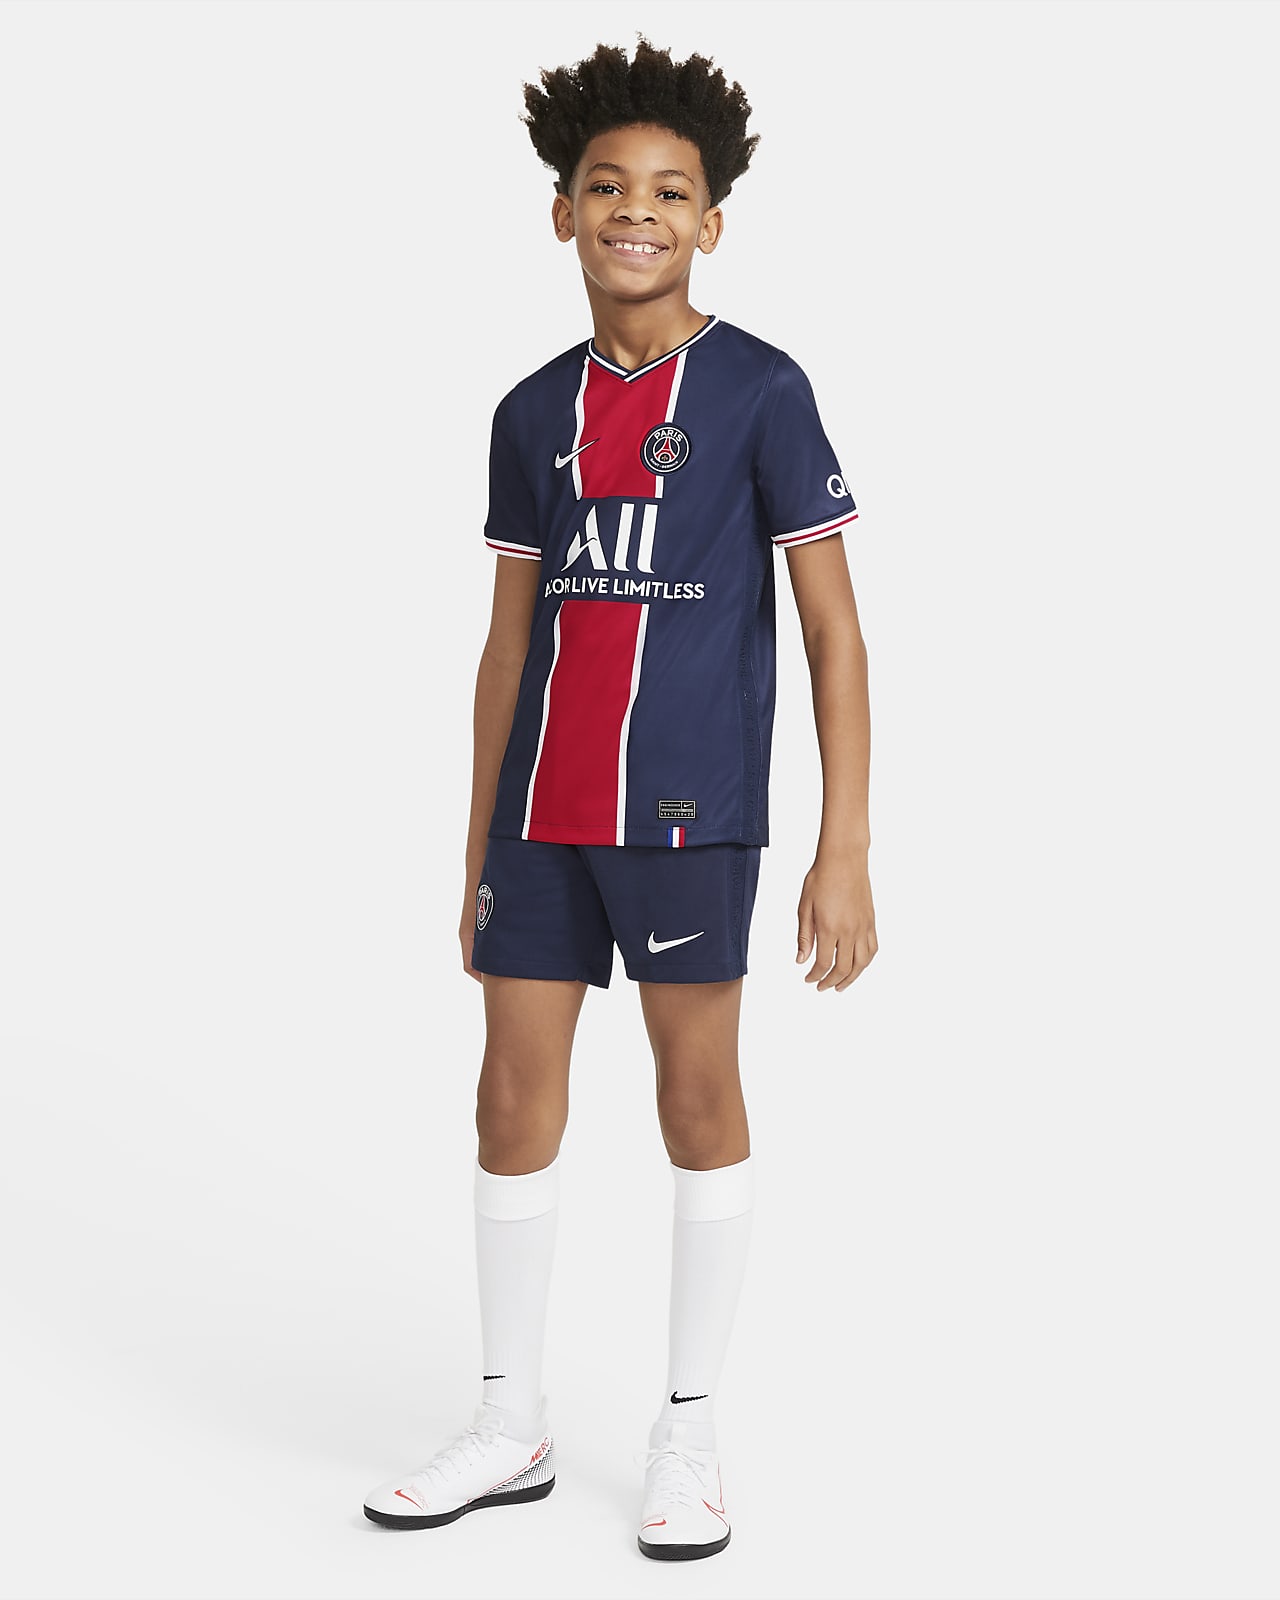 Nike公式 パリ サンジェルマン 21 スタジアム ホーム ジュニア サッカーユニフォーム オンラインストア 通販サイト